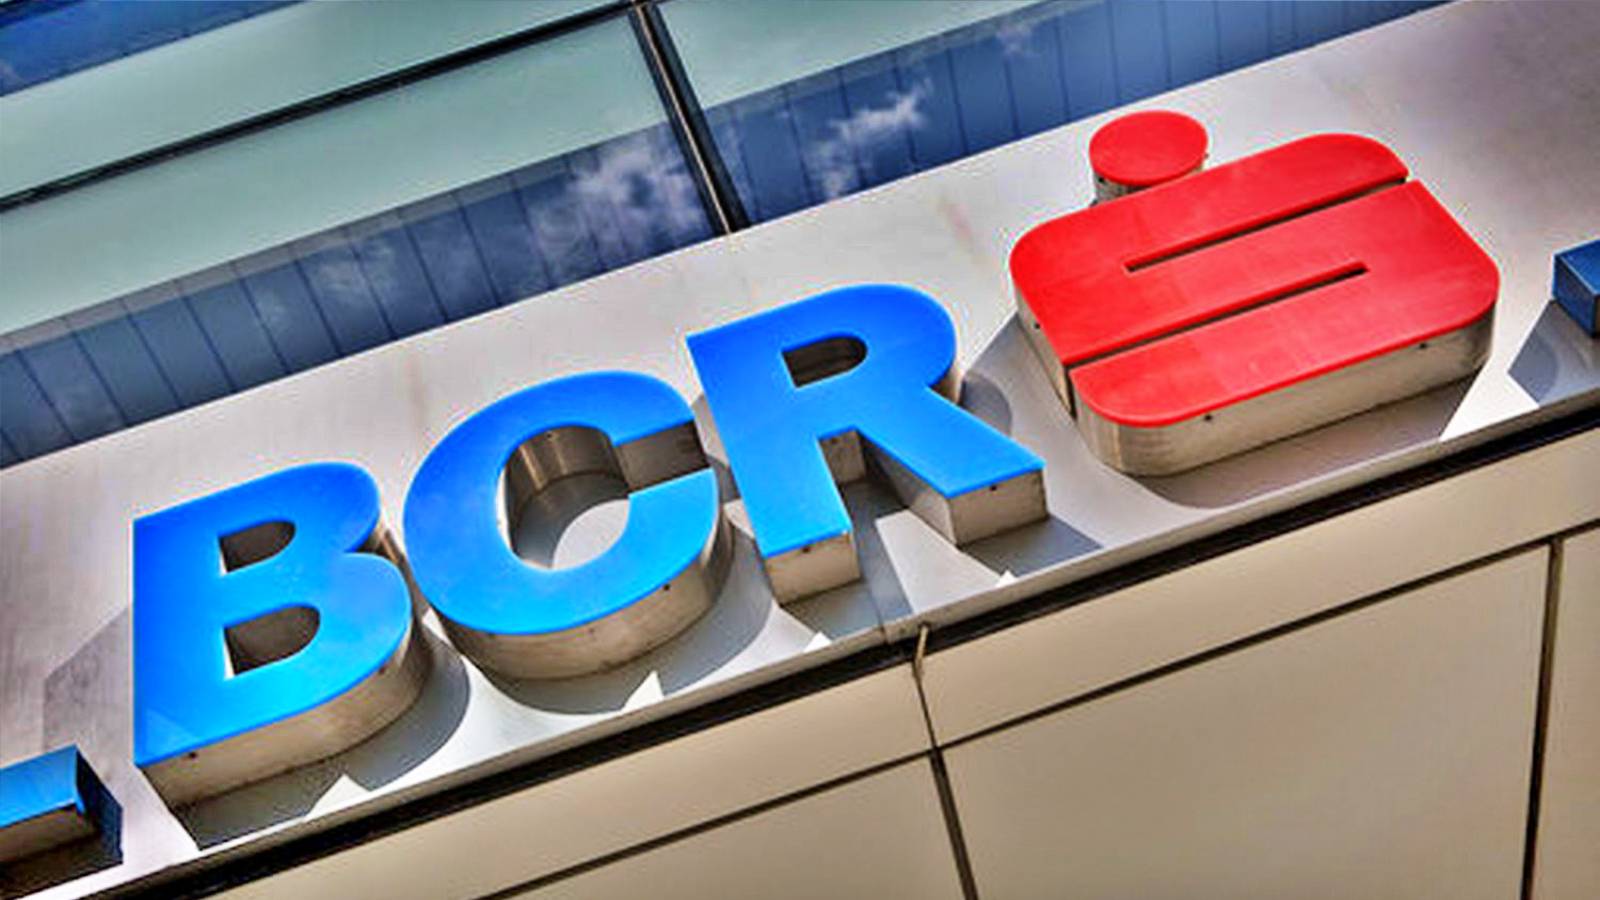 BCR Rumania educó a sus clientes Medida extremadamente IMPORTANTE adoptada por el banco